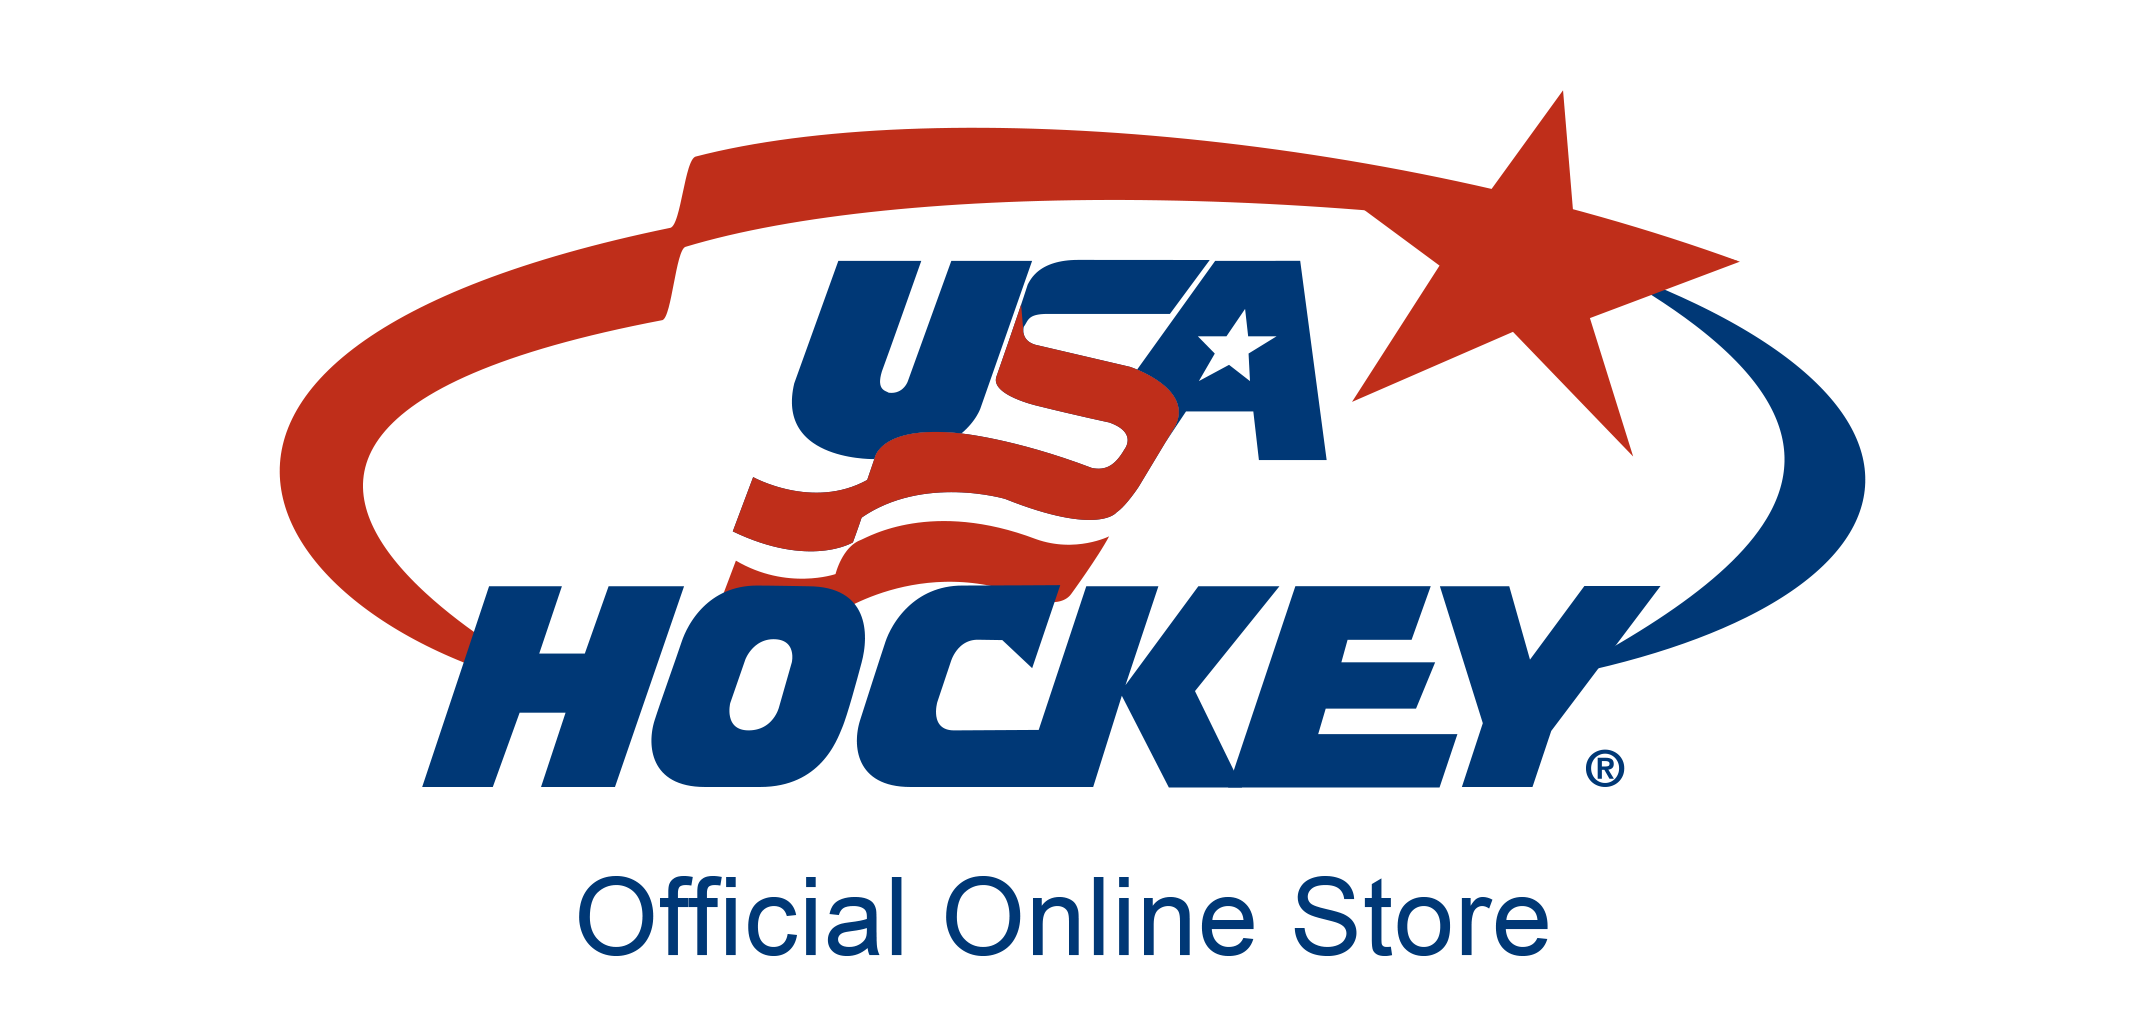 ShopUSAHockey USA Hockey Jerseys and USA Hockey merchandise